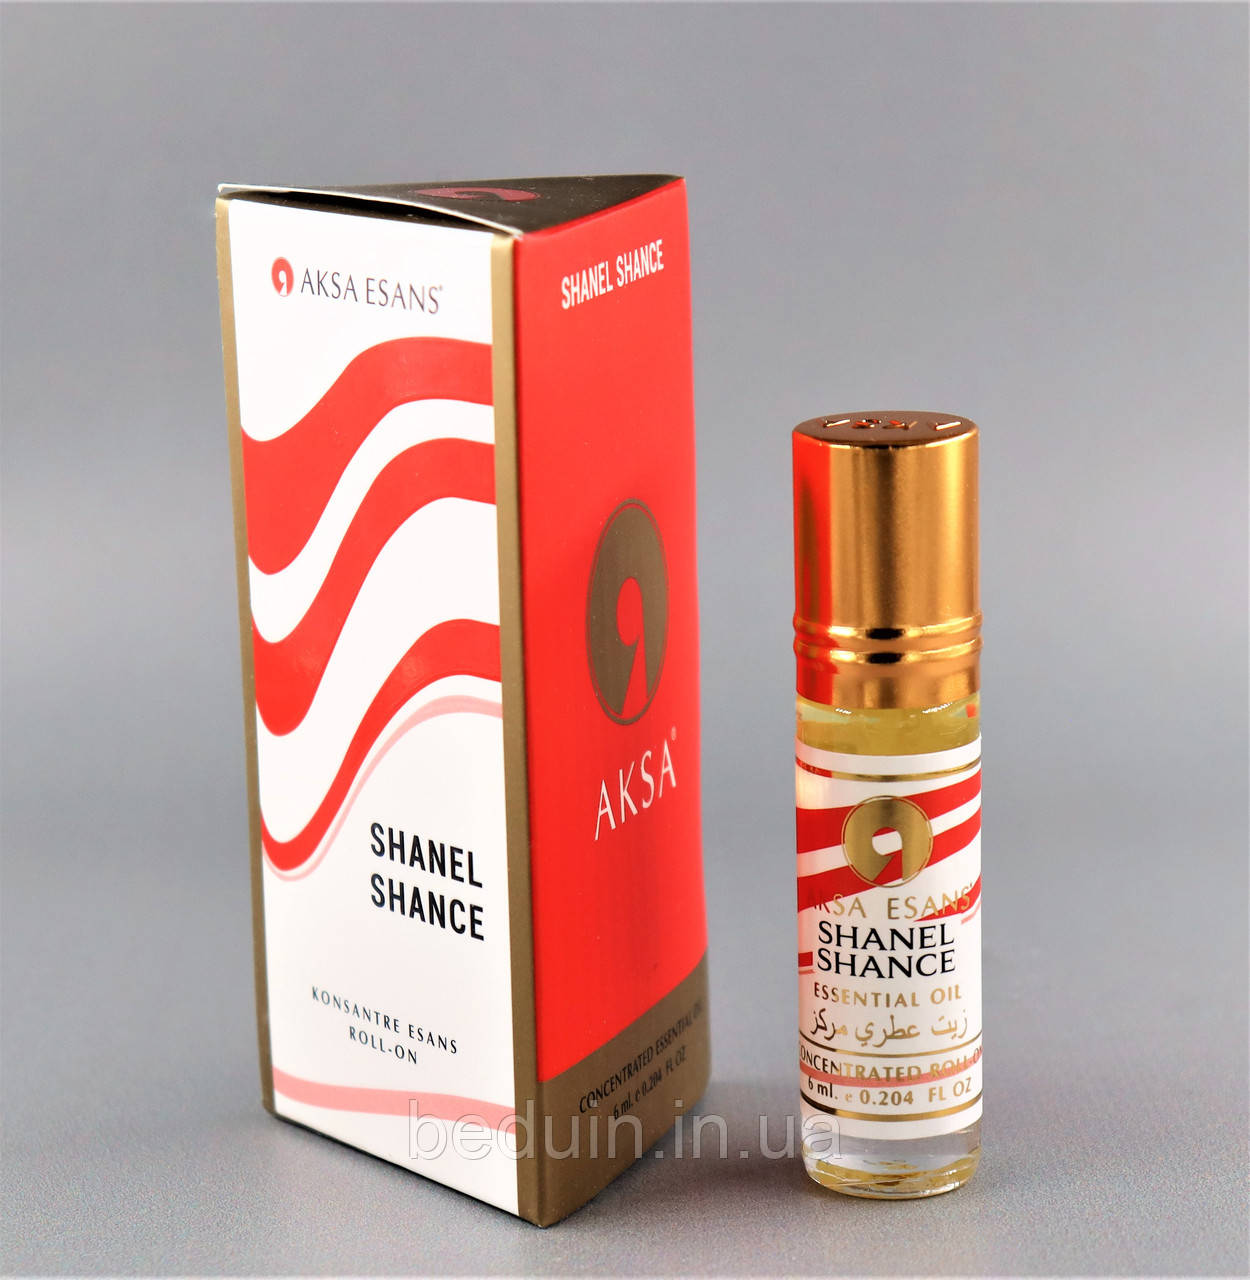 Олійні парфуми Shanel Shance Аналог — шанс шанель від AKSA ESANS